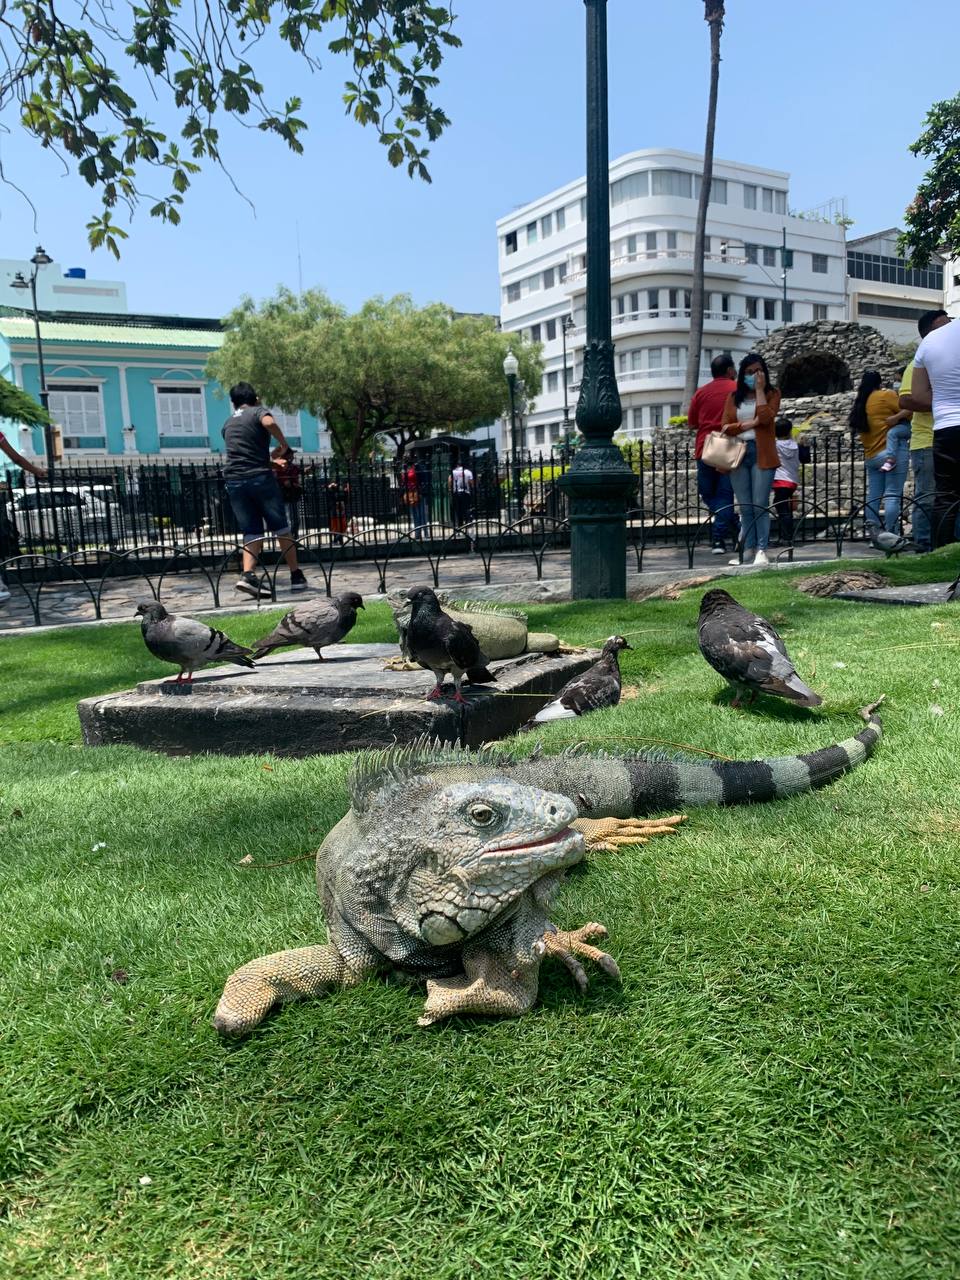 Land higuana at Parque Seminario